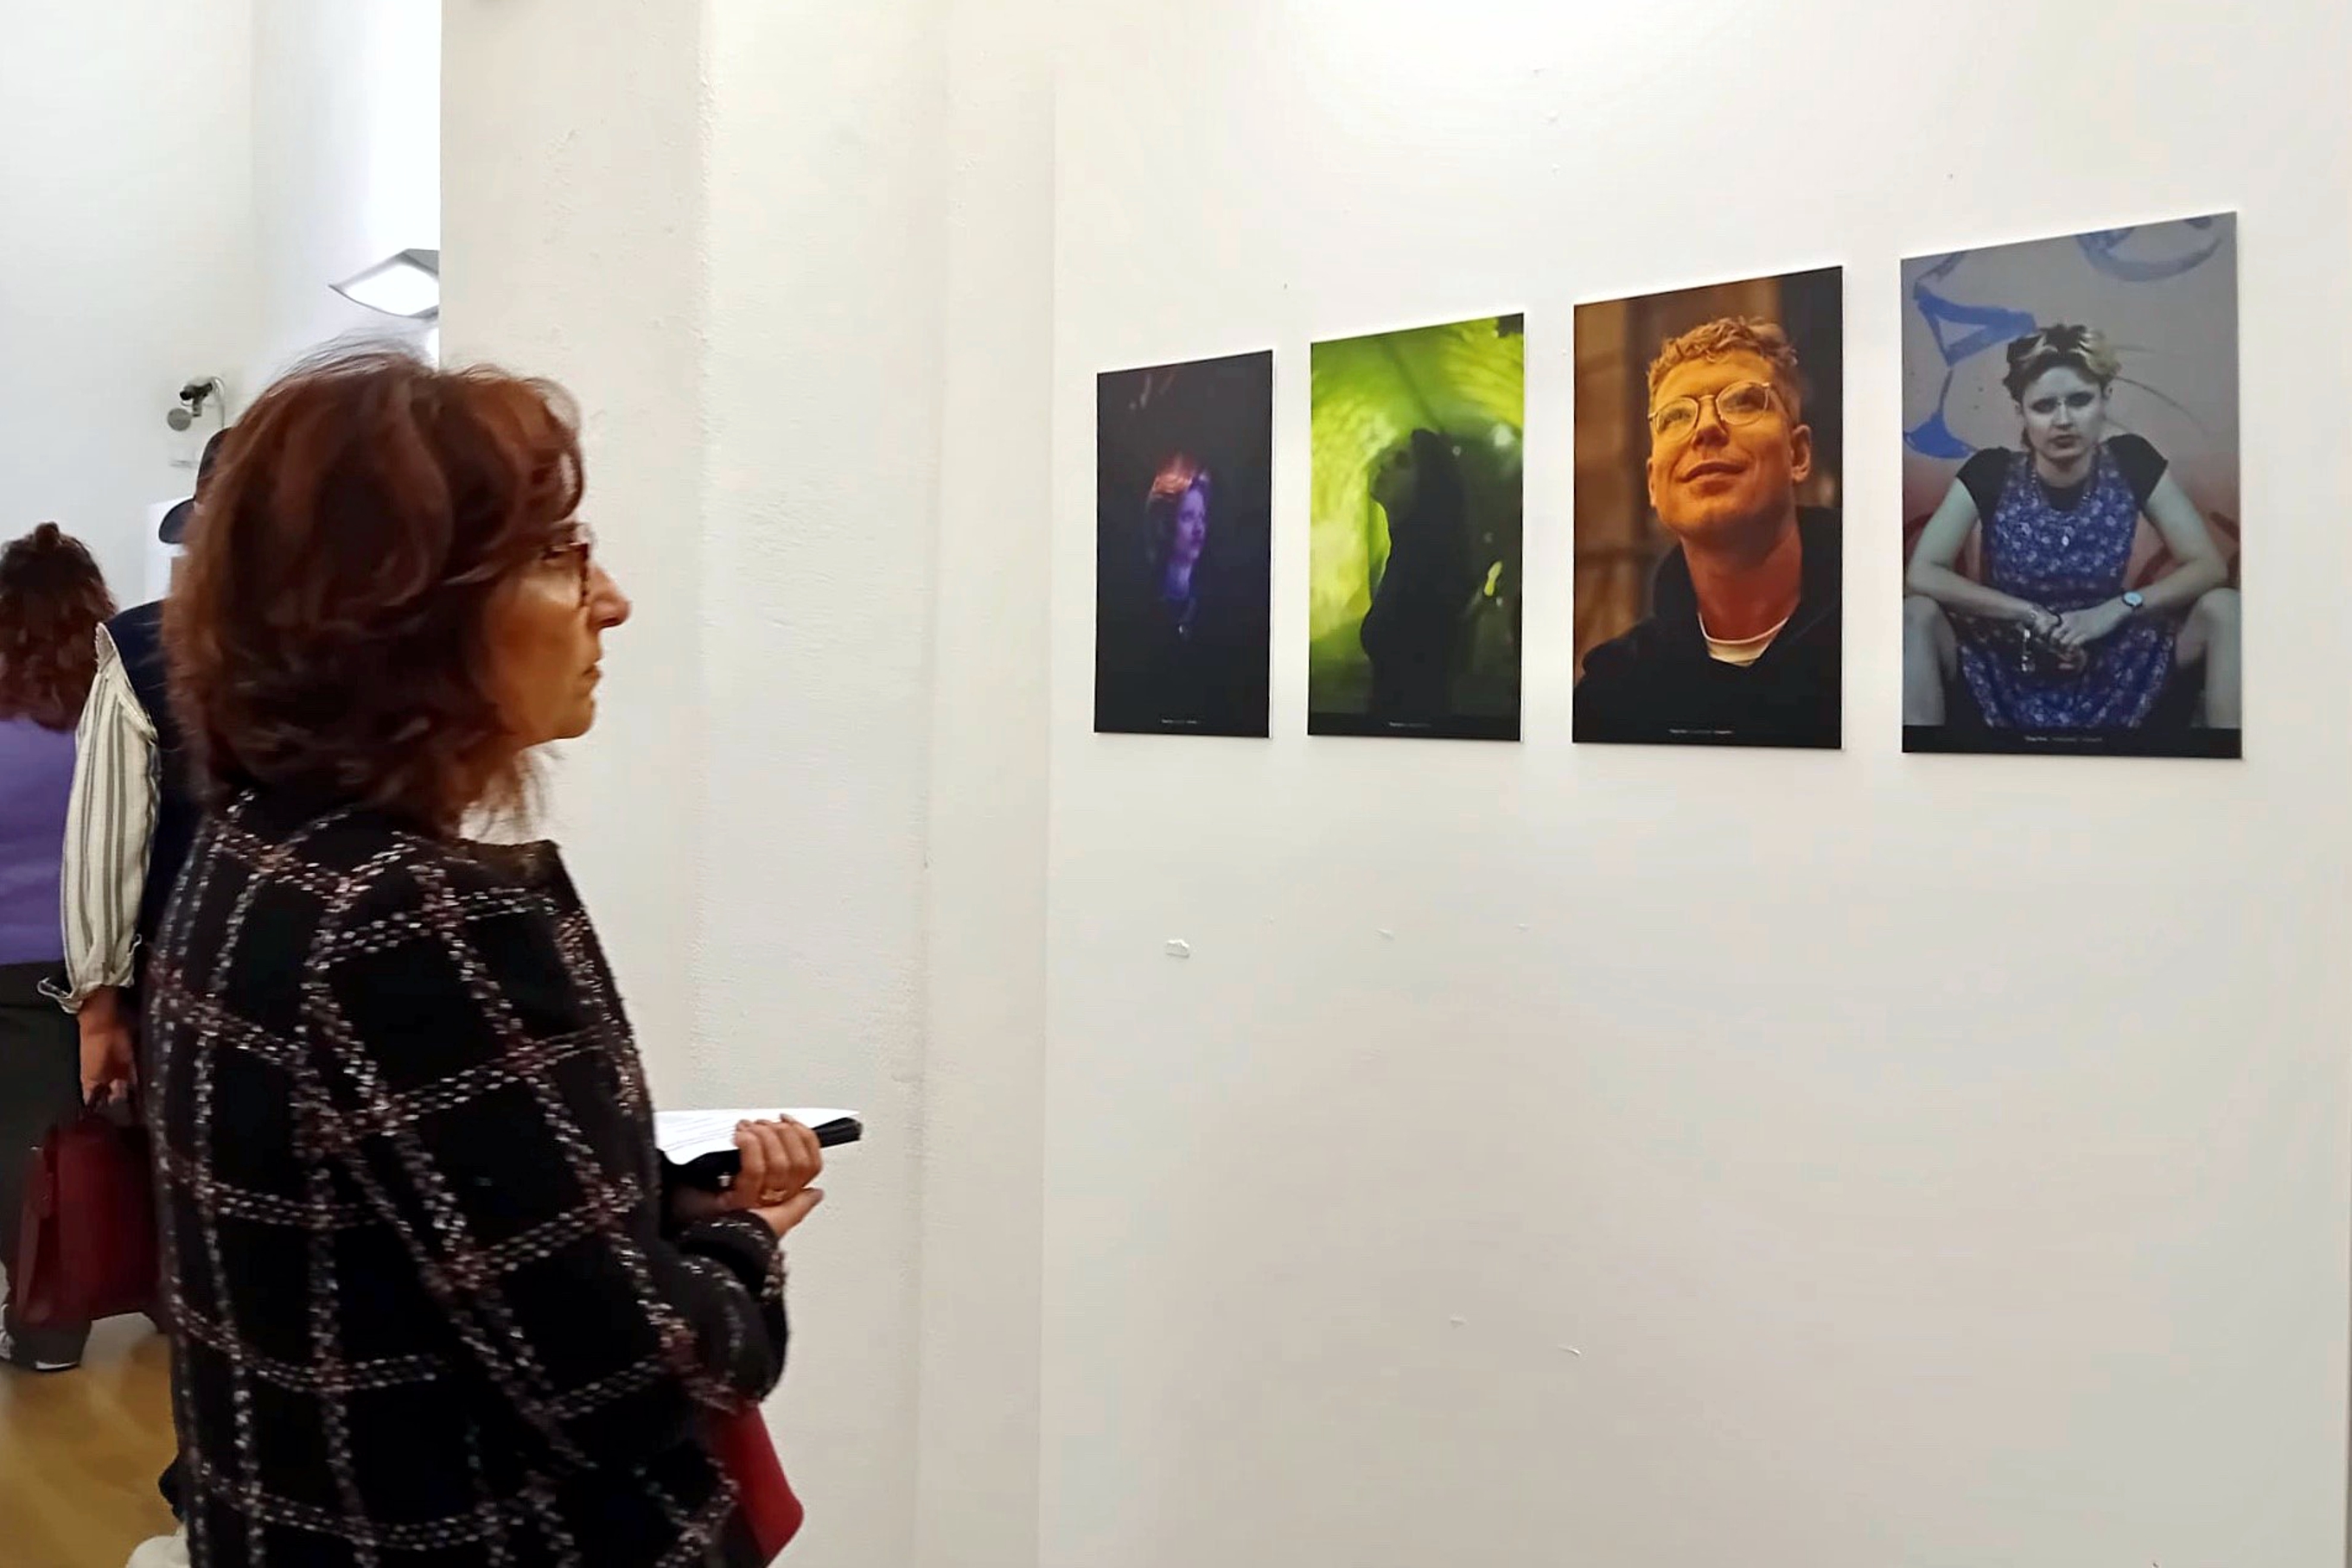 Representante da DGEsTE, Ana Martins, a ver atentamente as imagens da exposição.